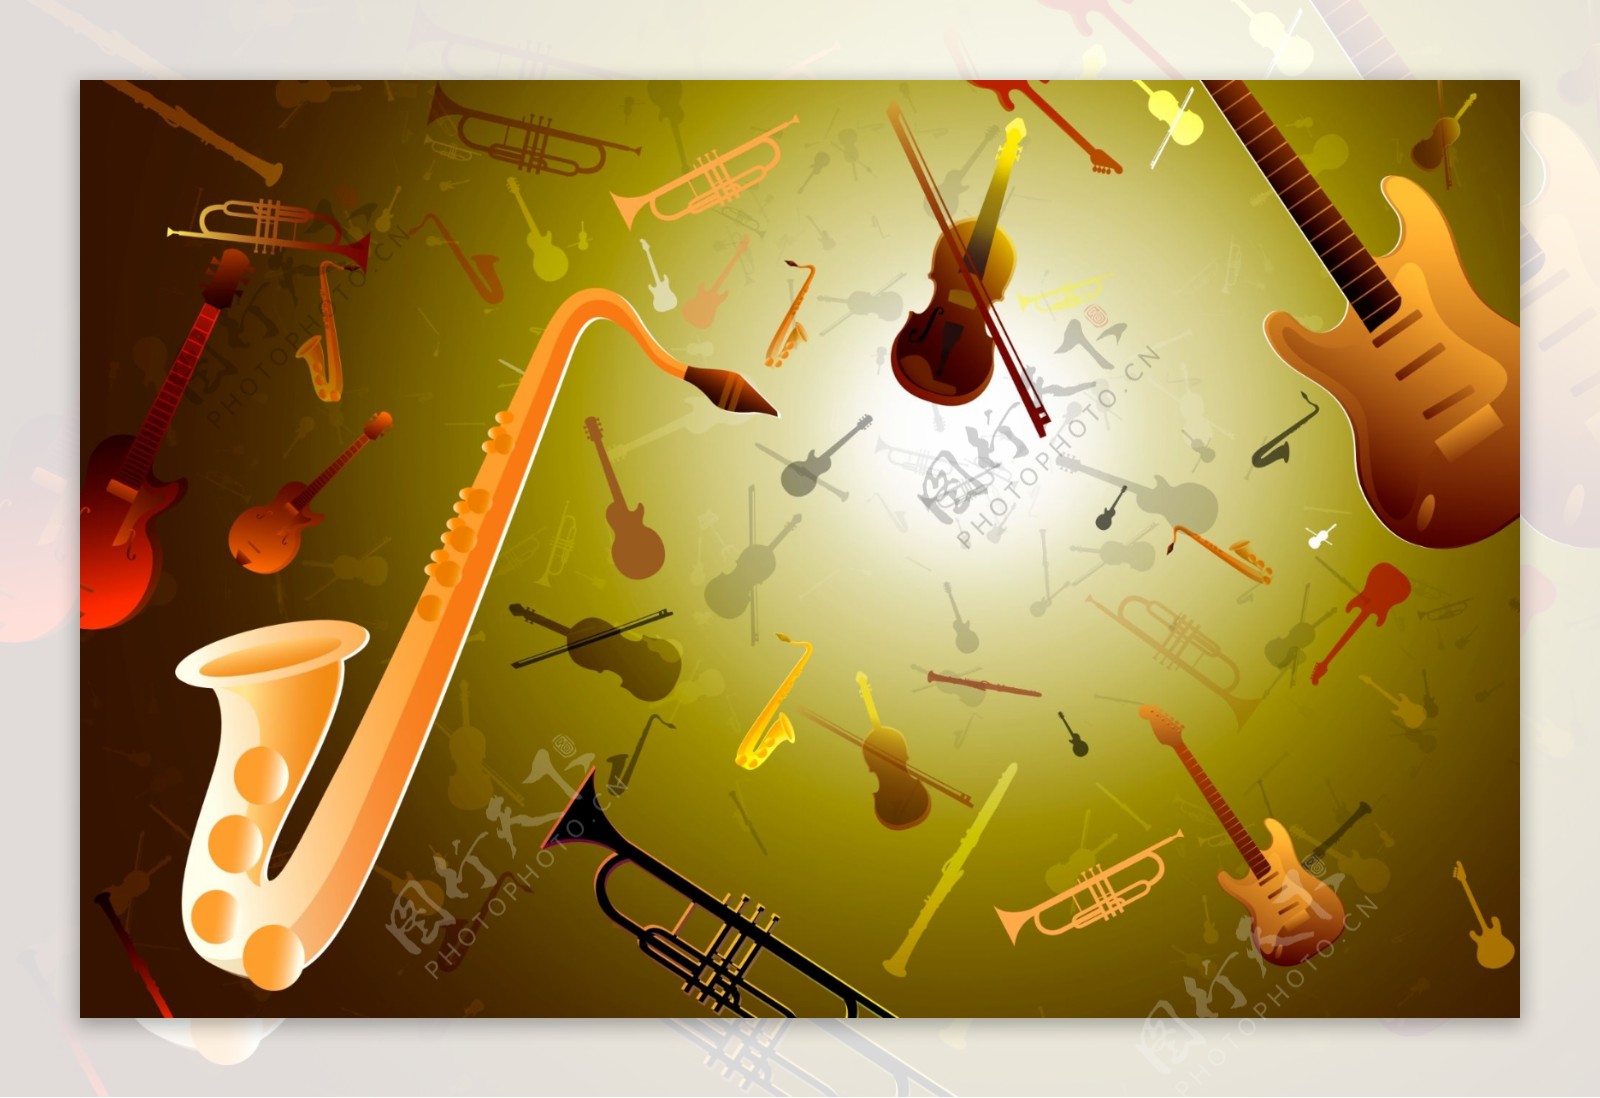 协奏曲乐器广告设计网页设计矢量素材